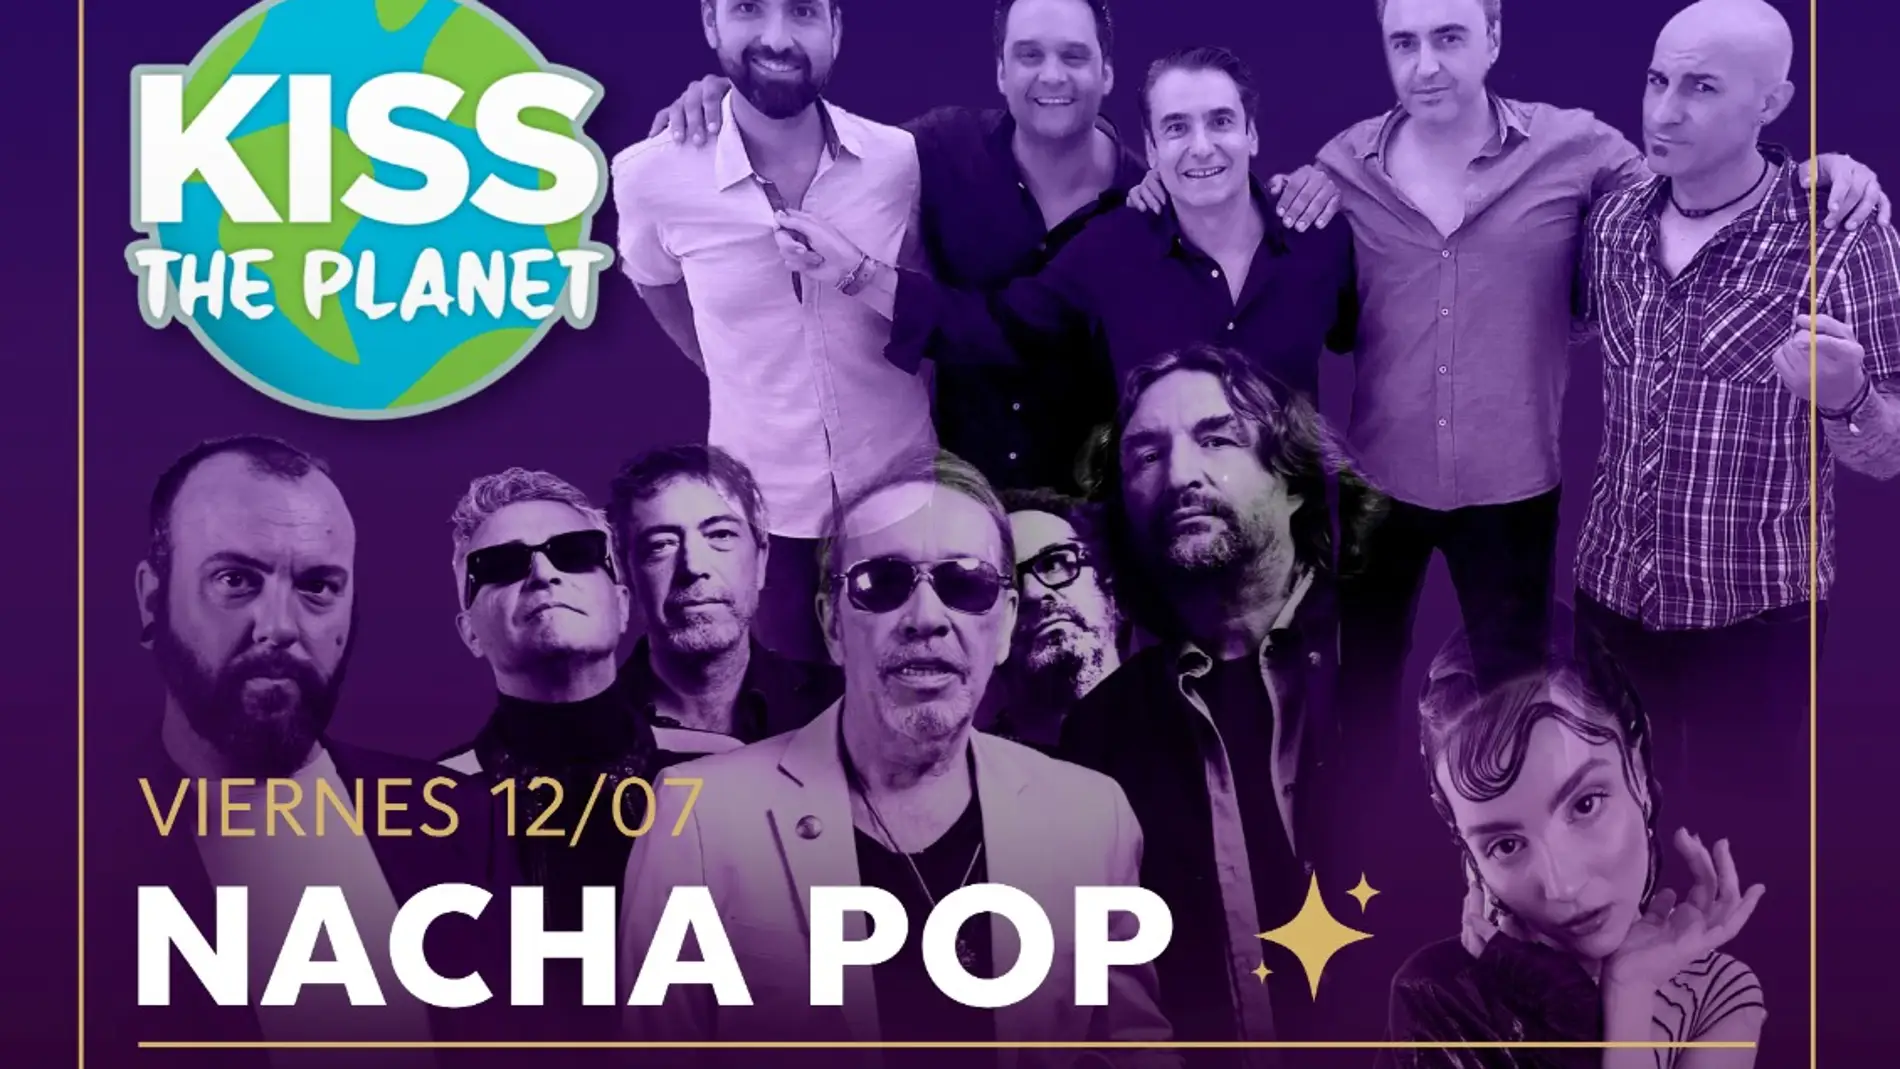 Este viernes Nacha Pop y Modestia Aparte en el 63 Festival de Música Cueva de Nerja, con la fiesta Kiss The Planet